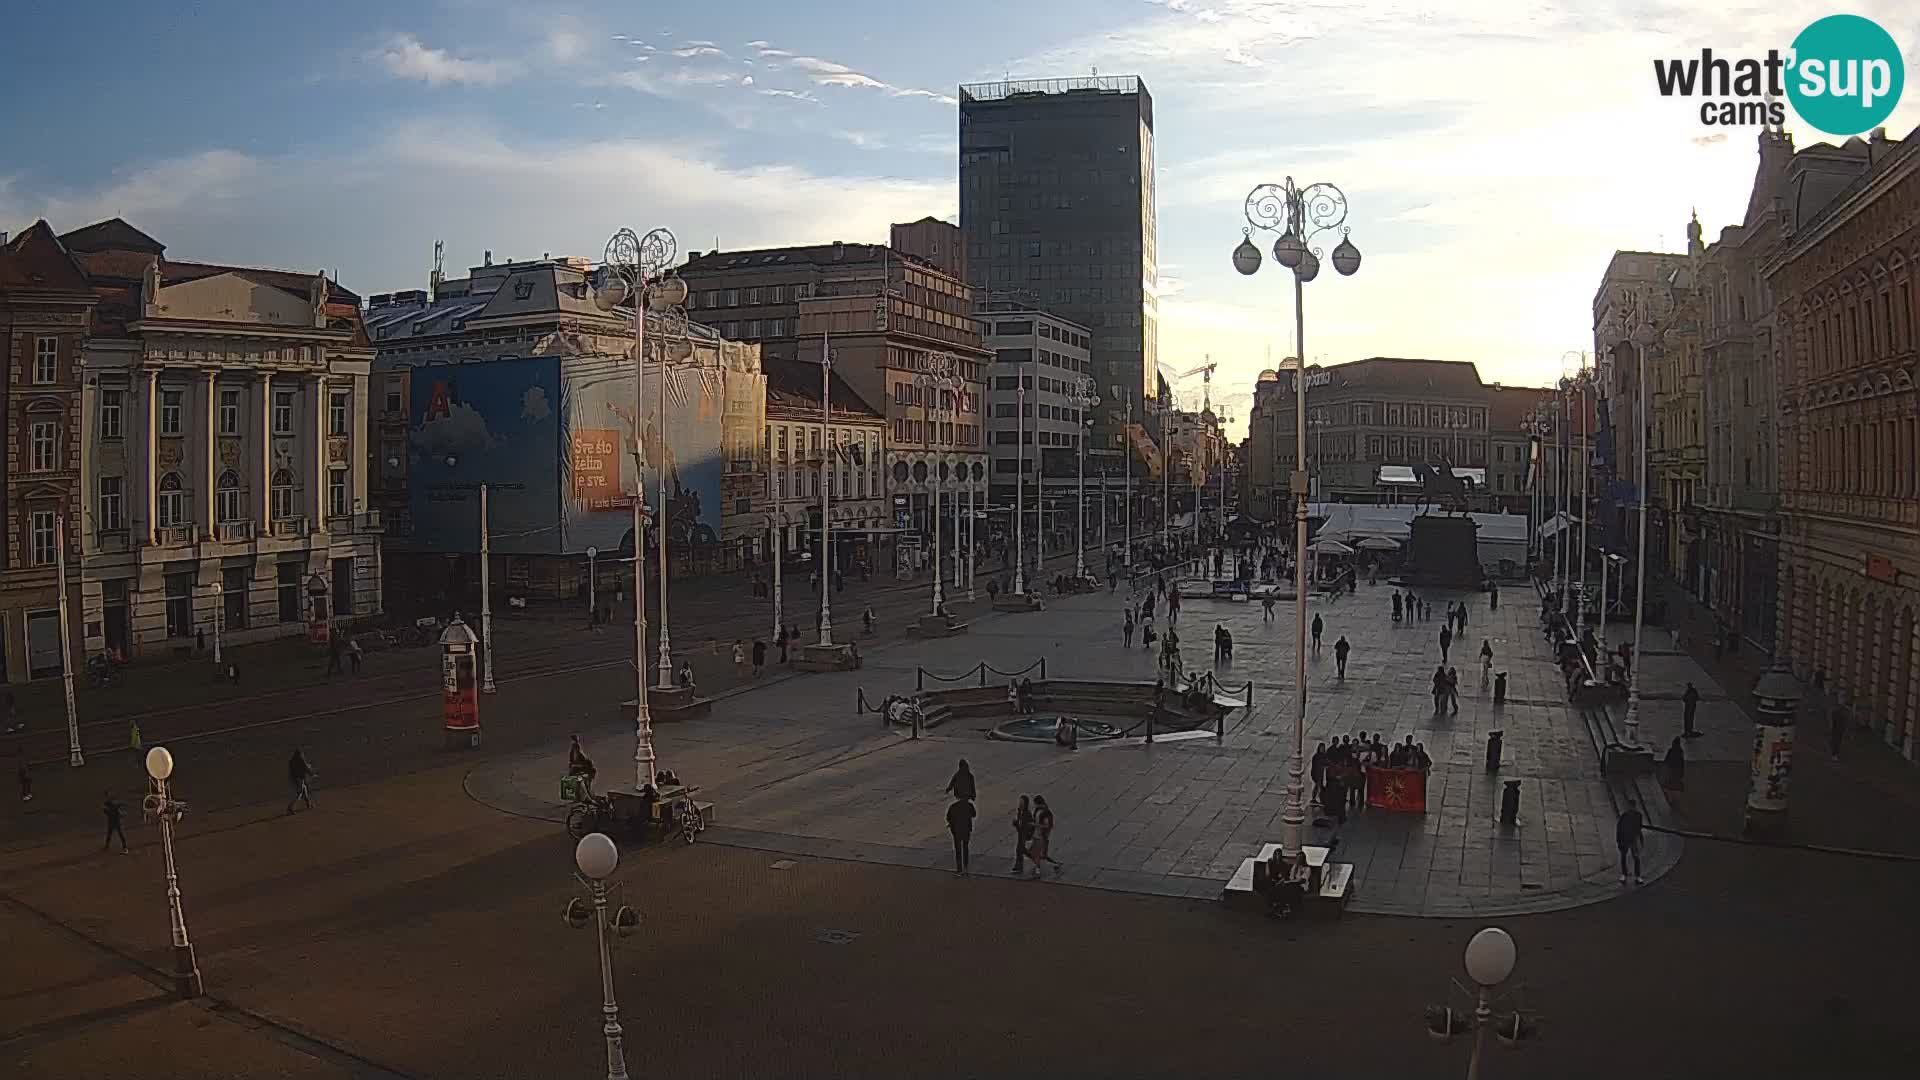 Zagreb Live Webcam – Bana Jelačić square